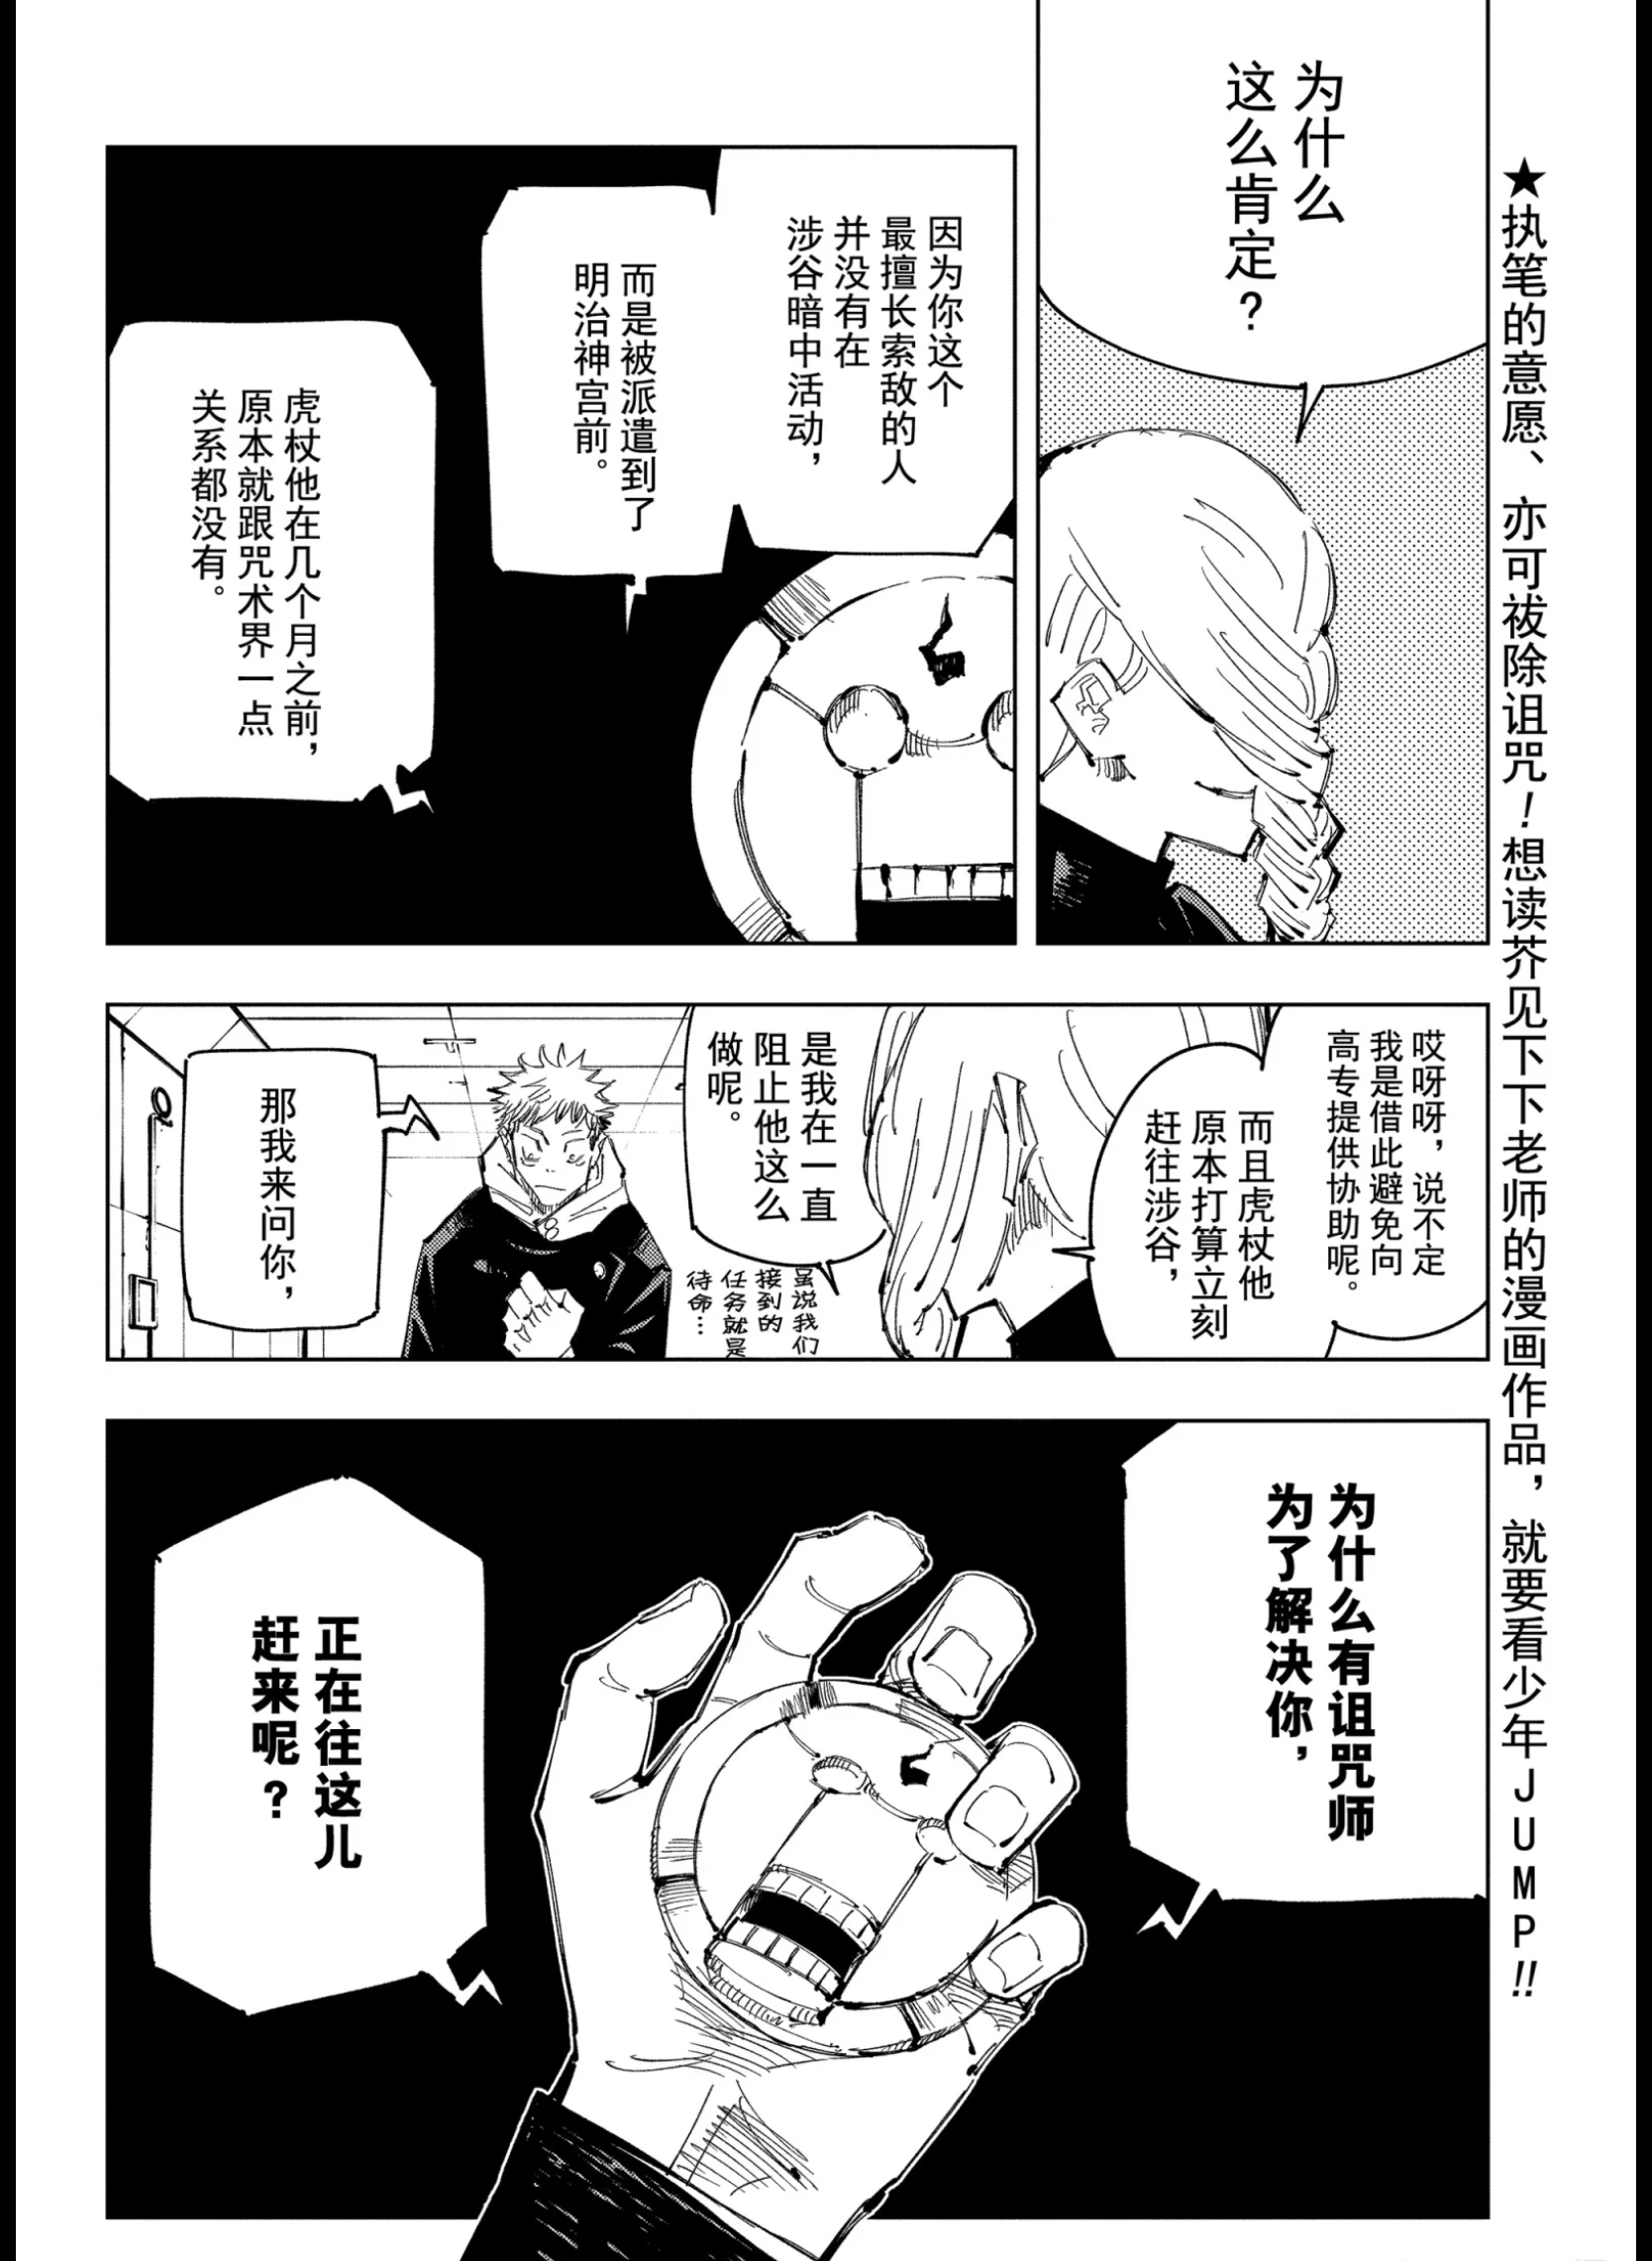 咒术回战漫画81 复活的机械丸 资讯咖